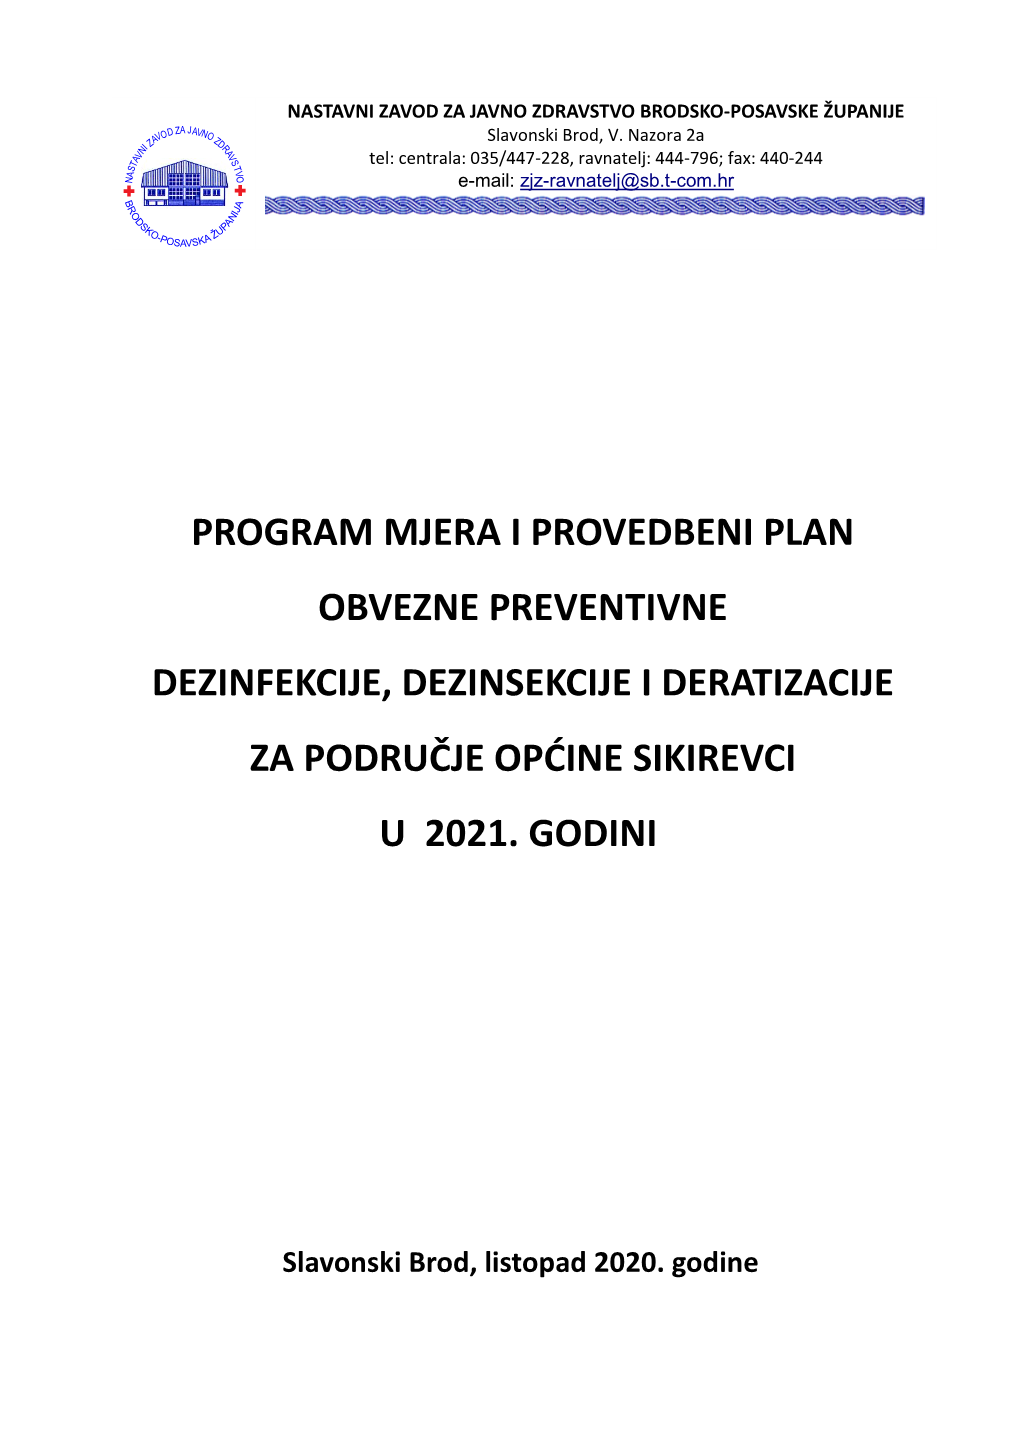 PROGRAM MJERA Općina Sikirevci Za 2021. Godinu